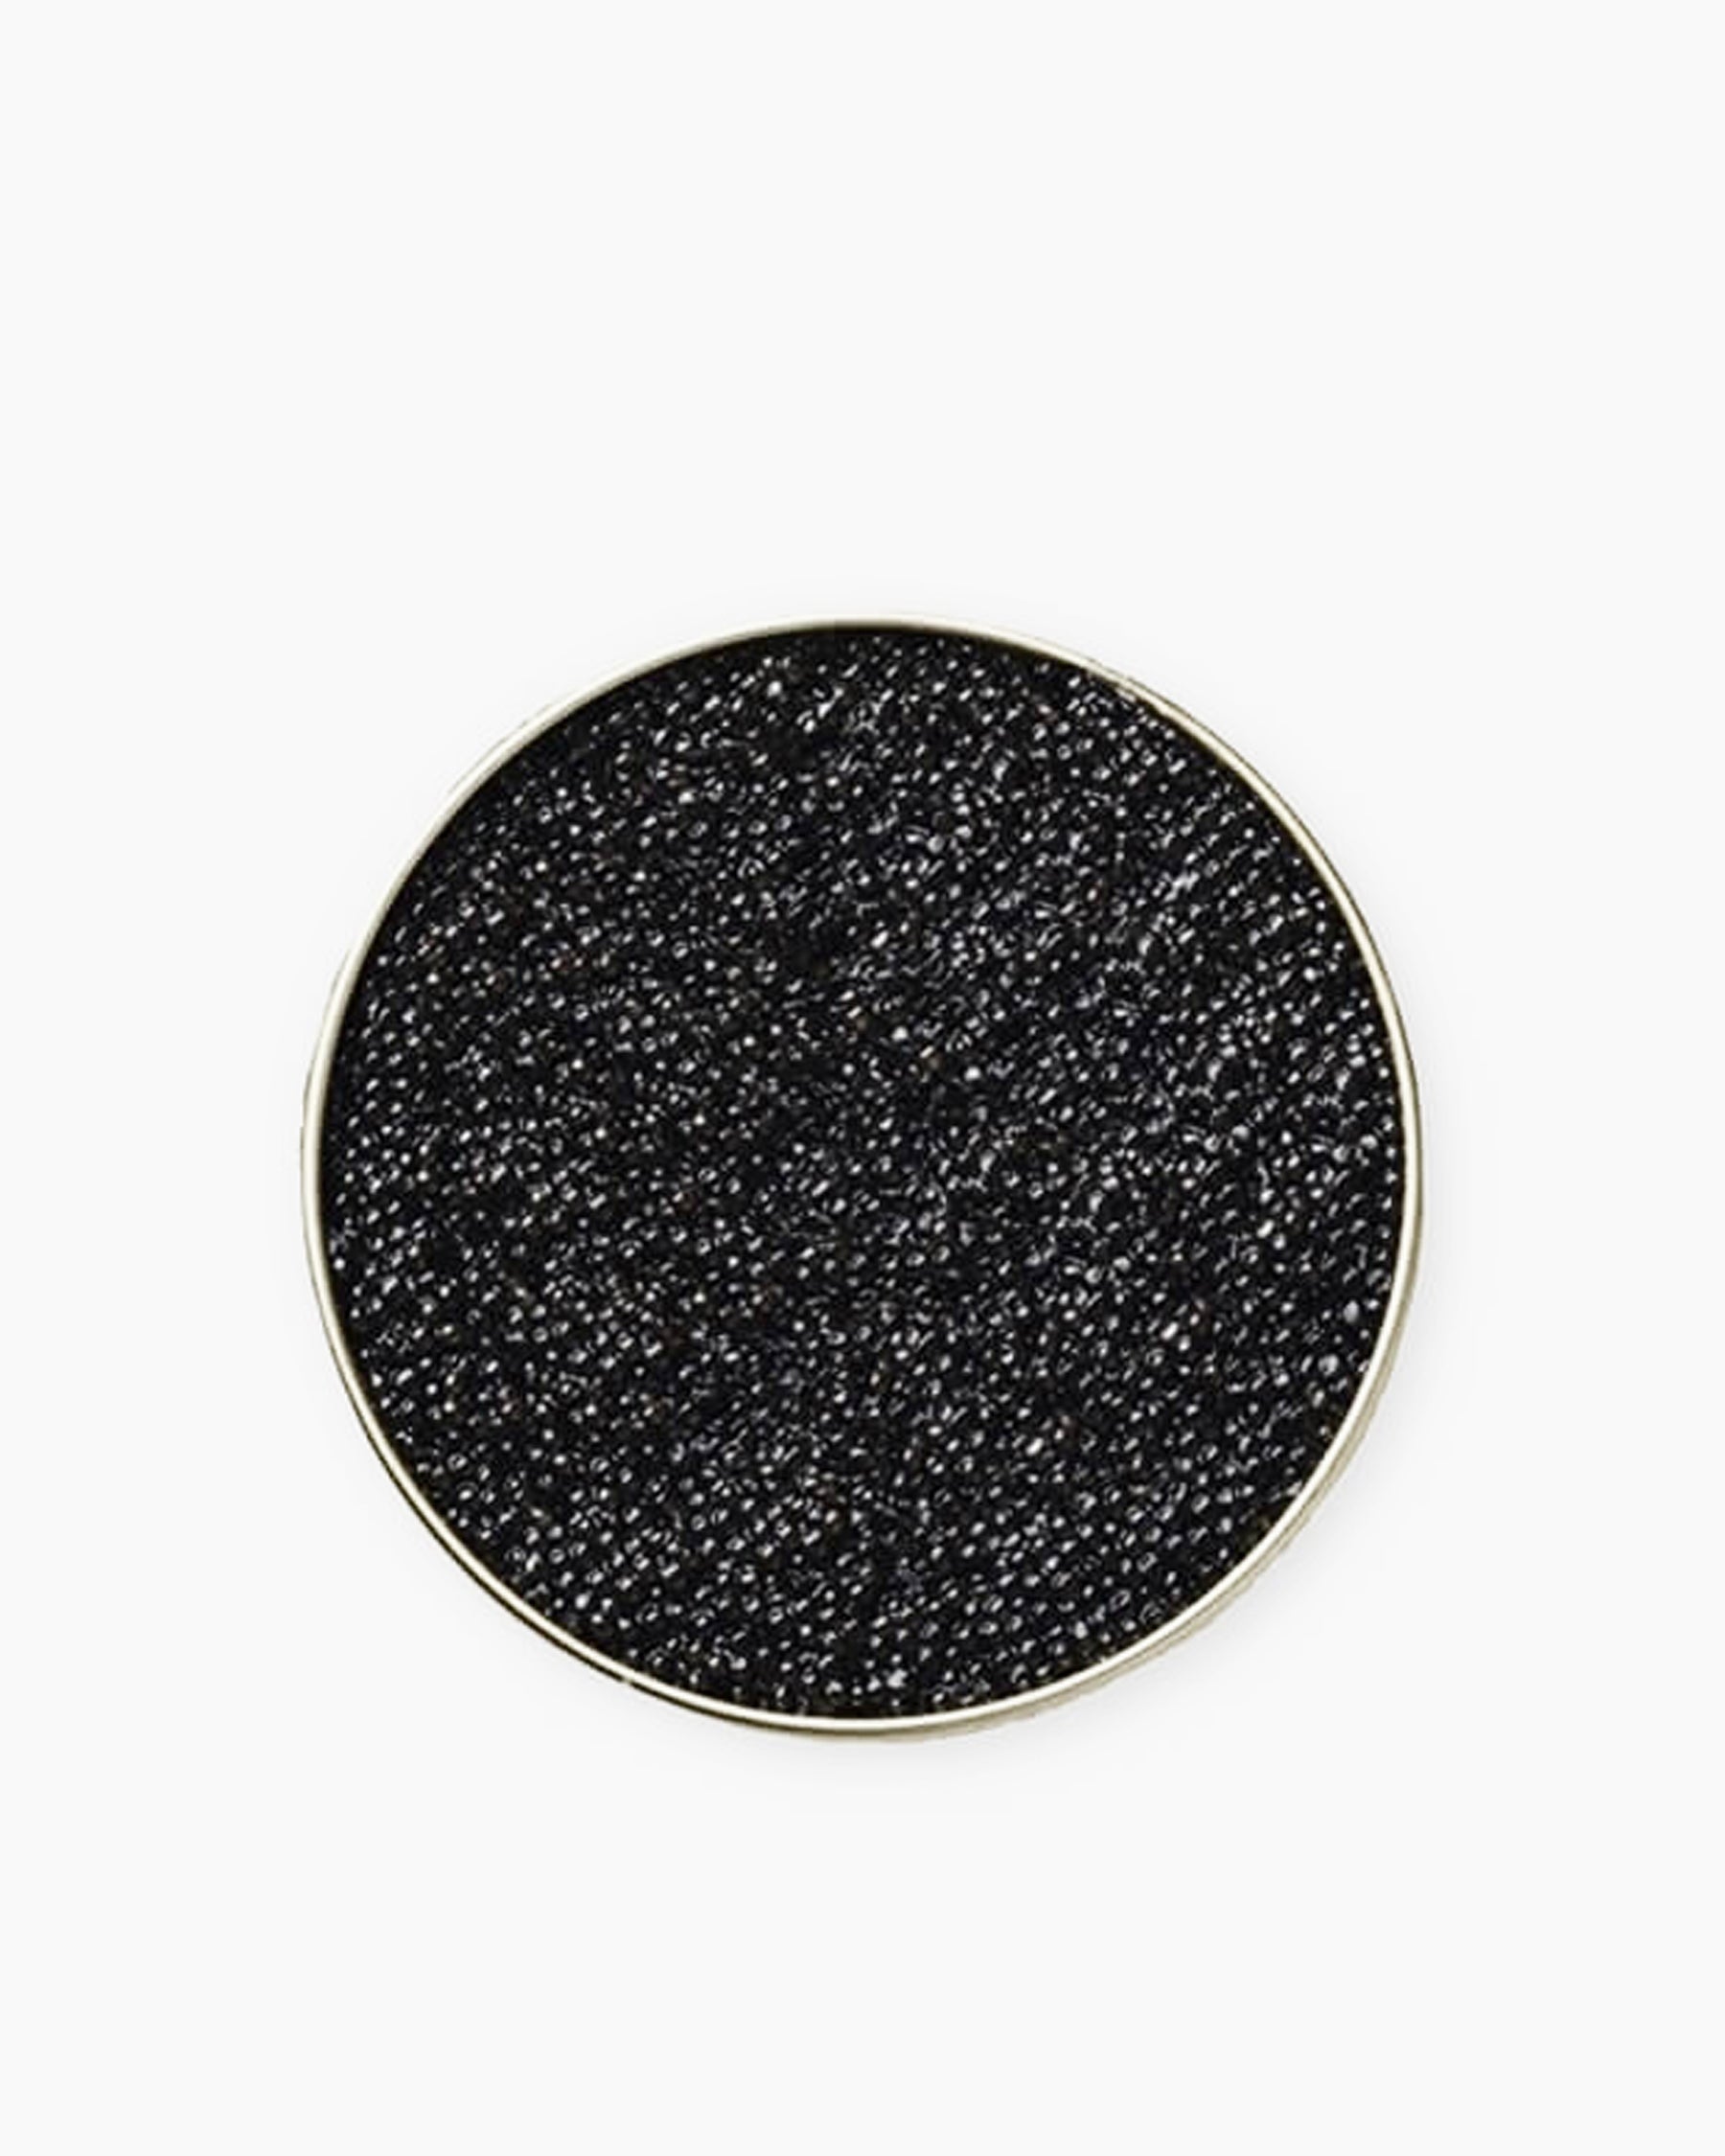 Caviar ecológico RIOFRÍO ORIGINAL 30g